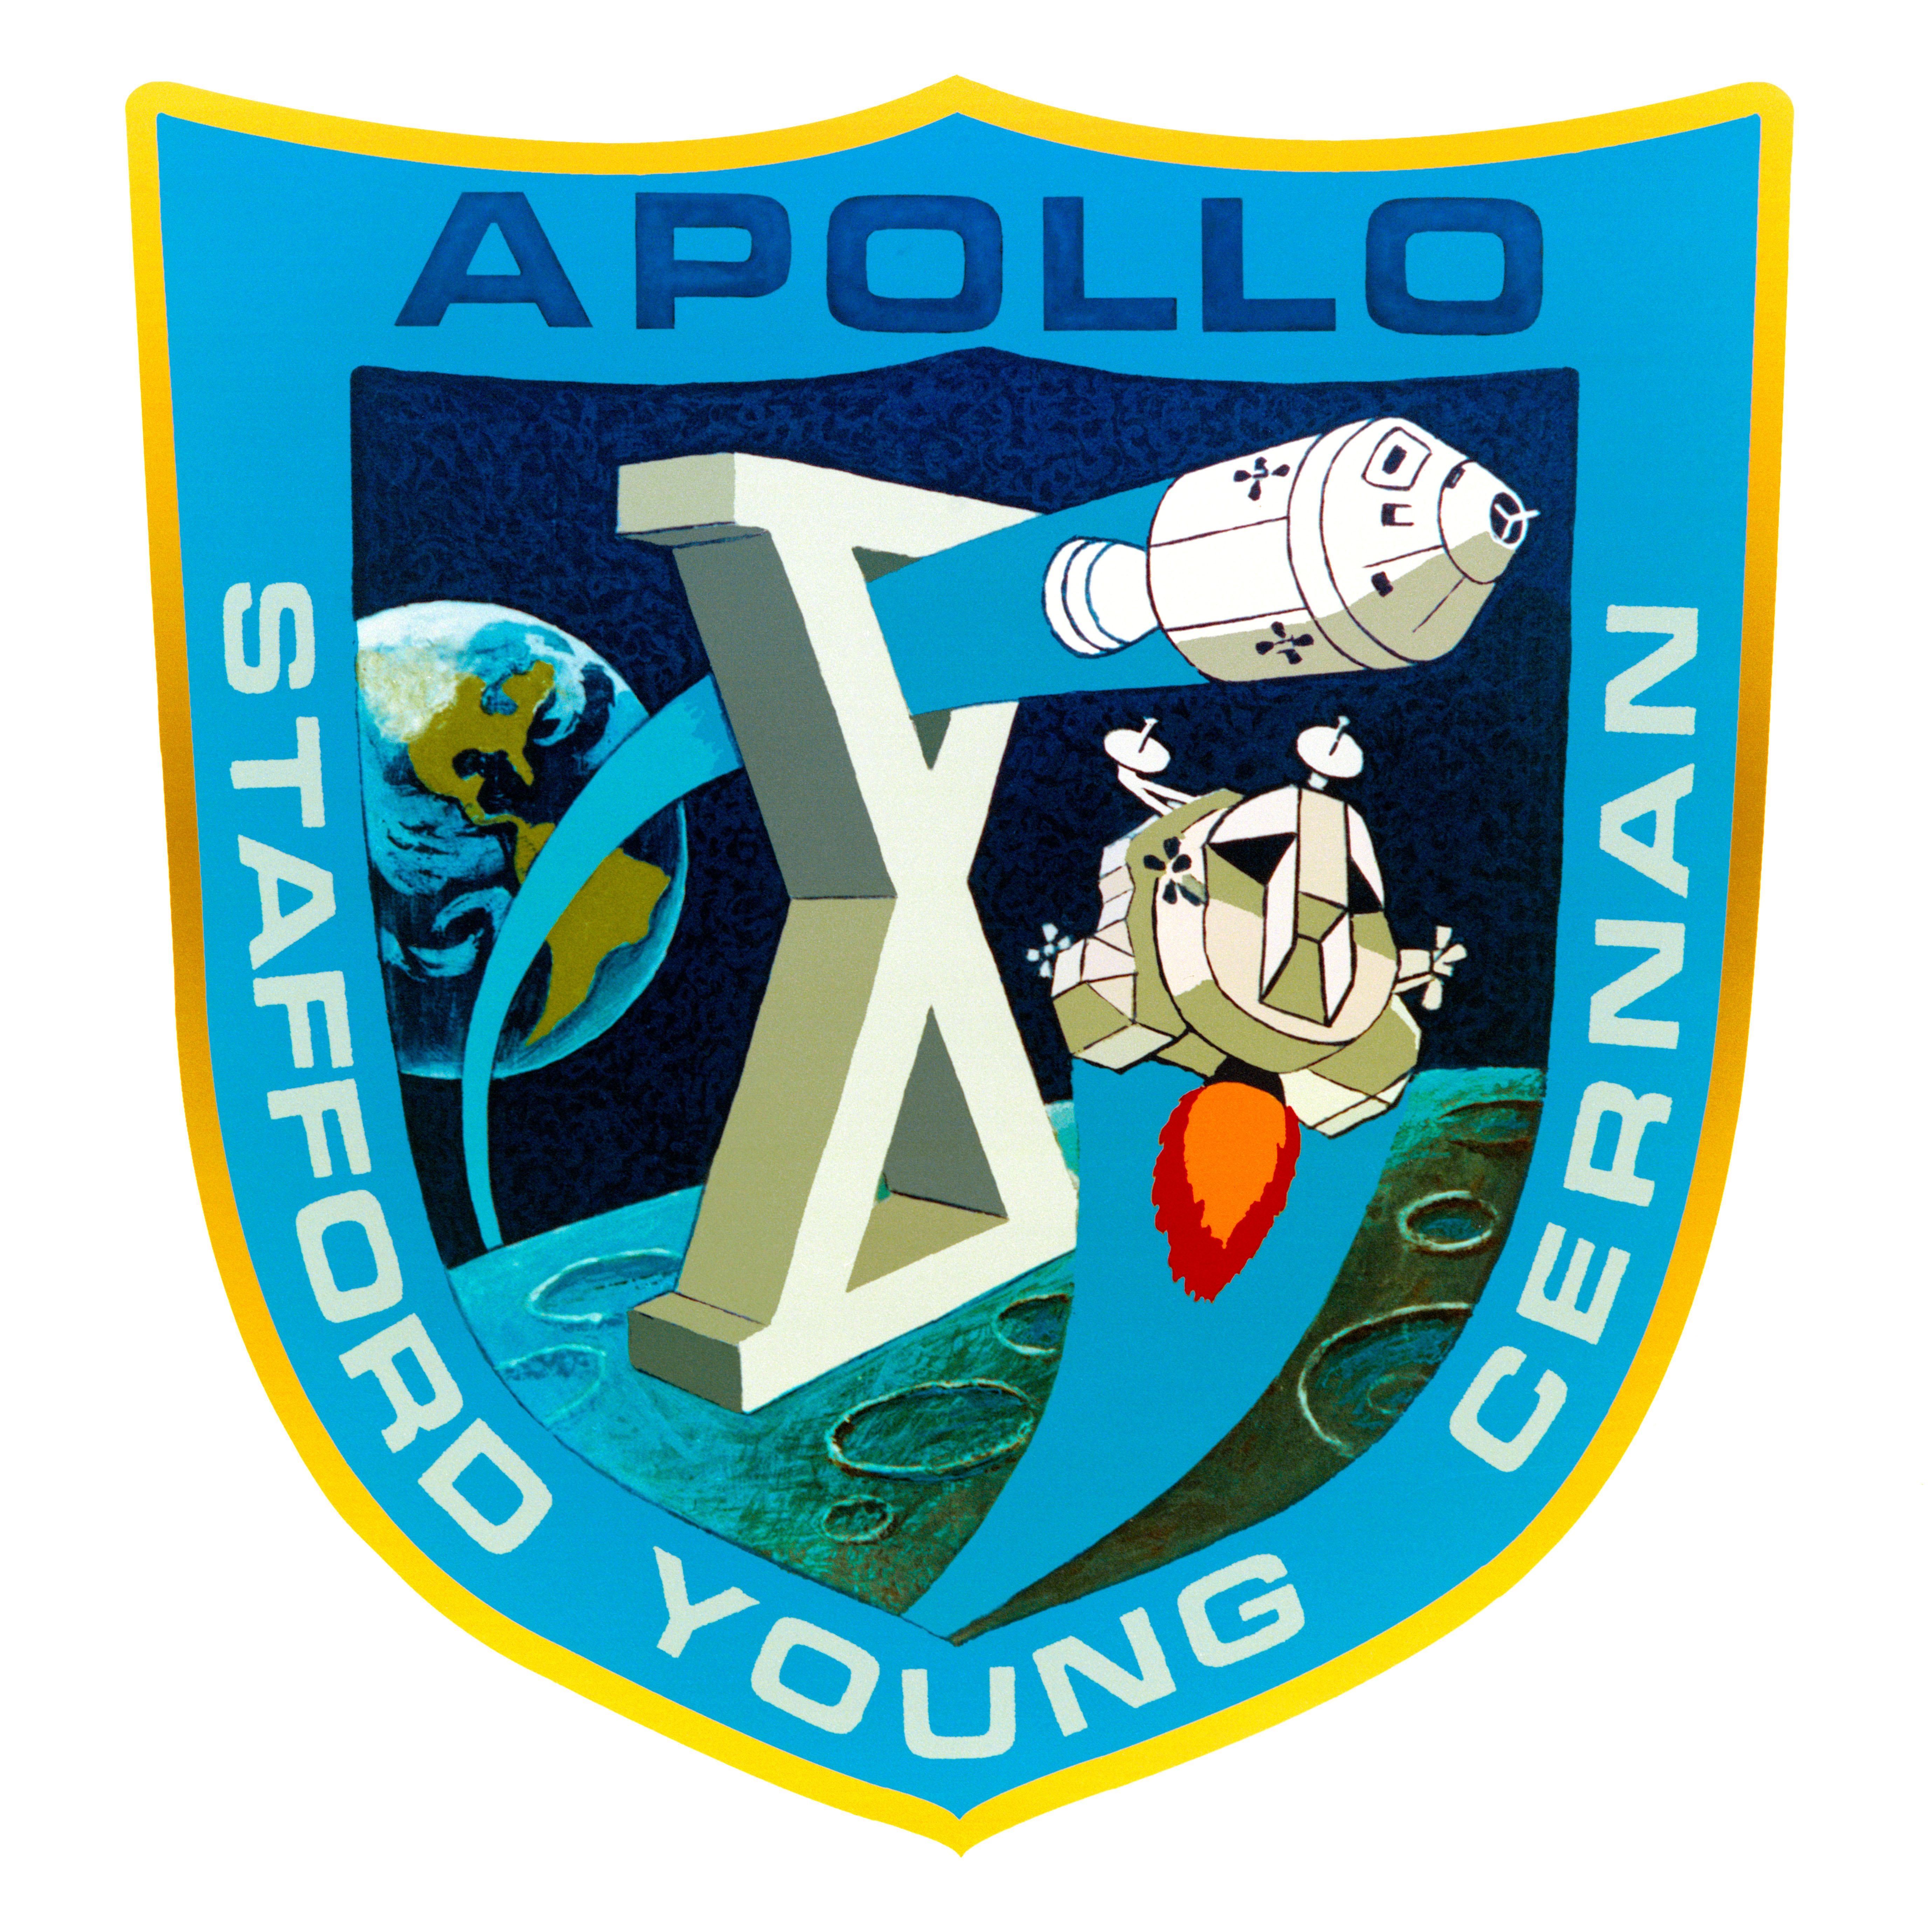 Apollo 10 mission patch